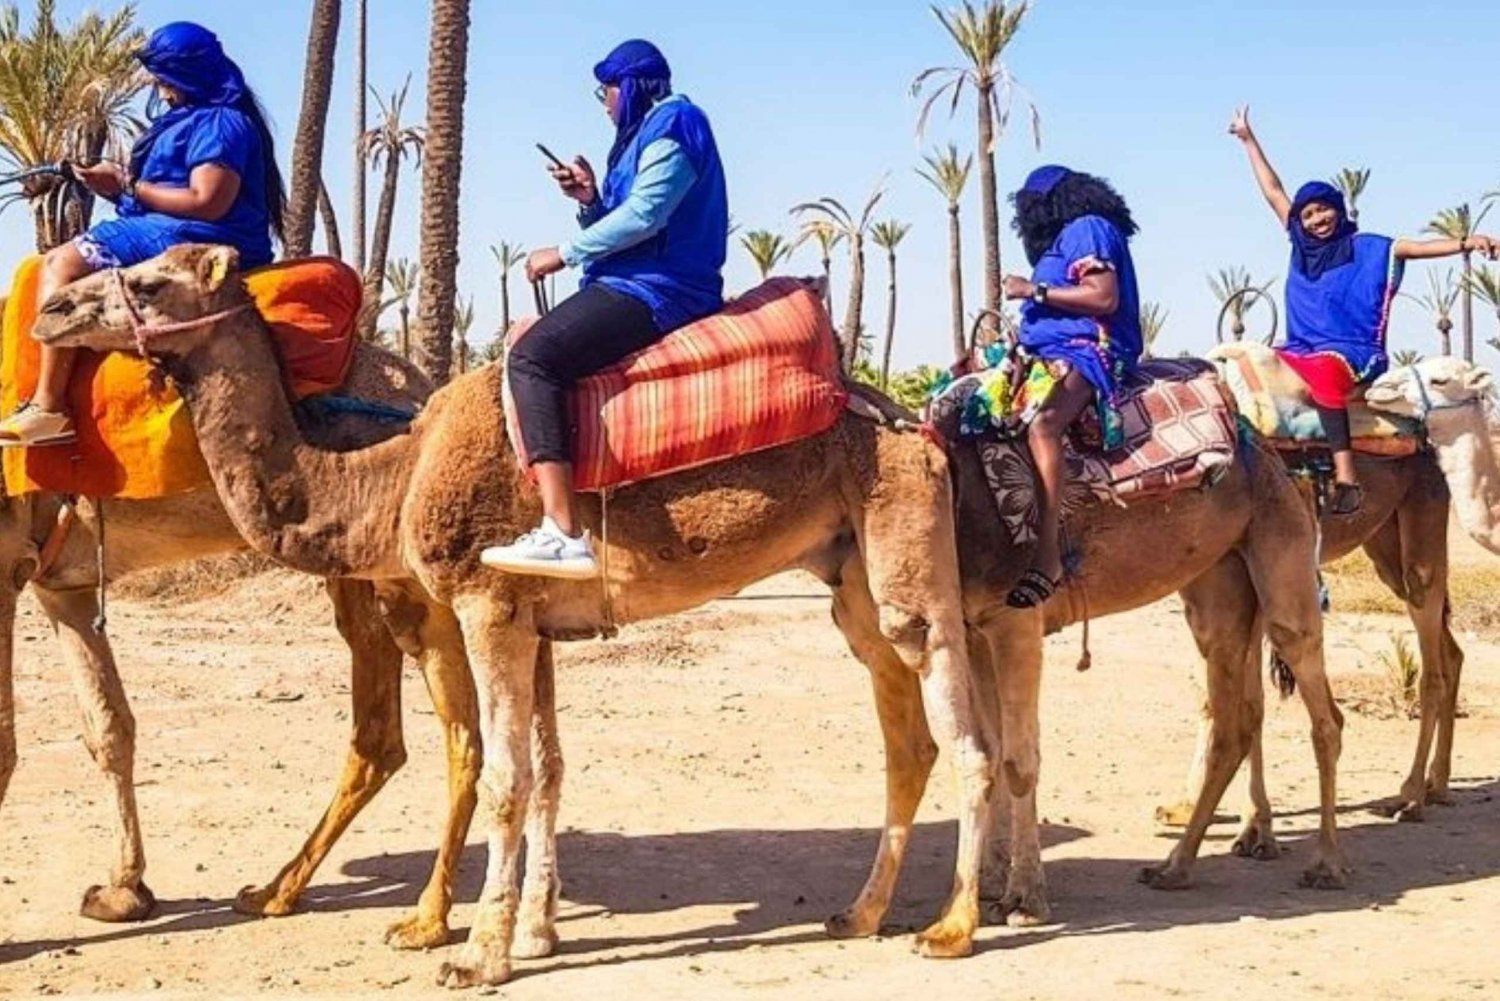 Ridtur på kamel i palmelunden i Marrakech